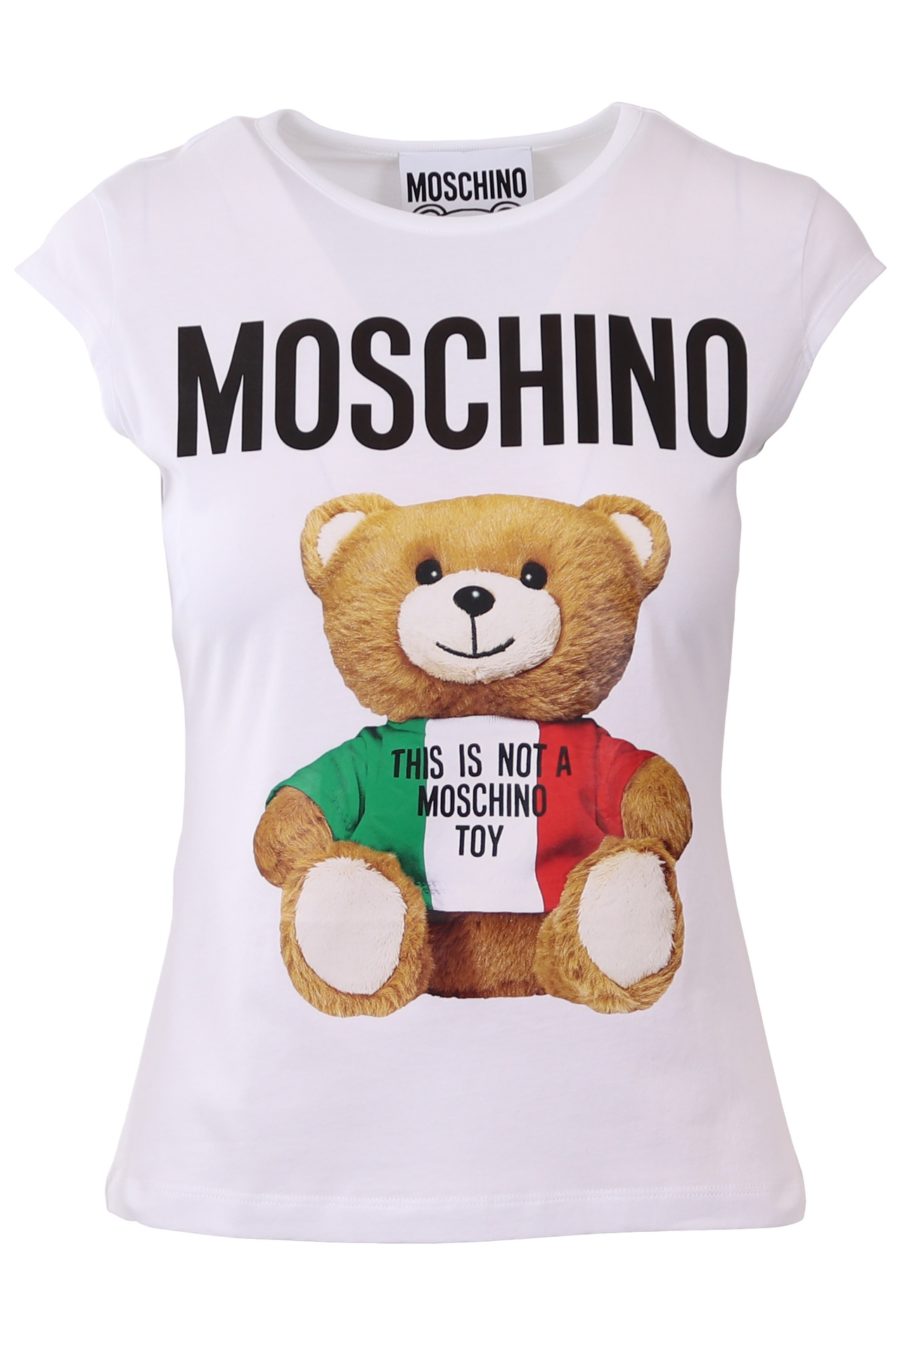 Moschino Couture weißes T-Shirt mit italienischem Bär - d2de5bca3304b89fbb4a4dd225721b54f6873677